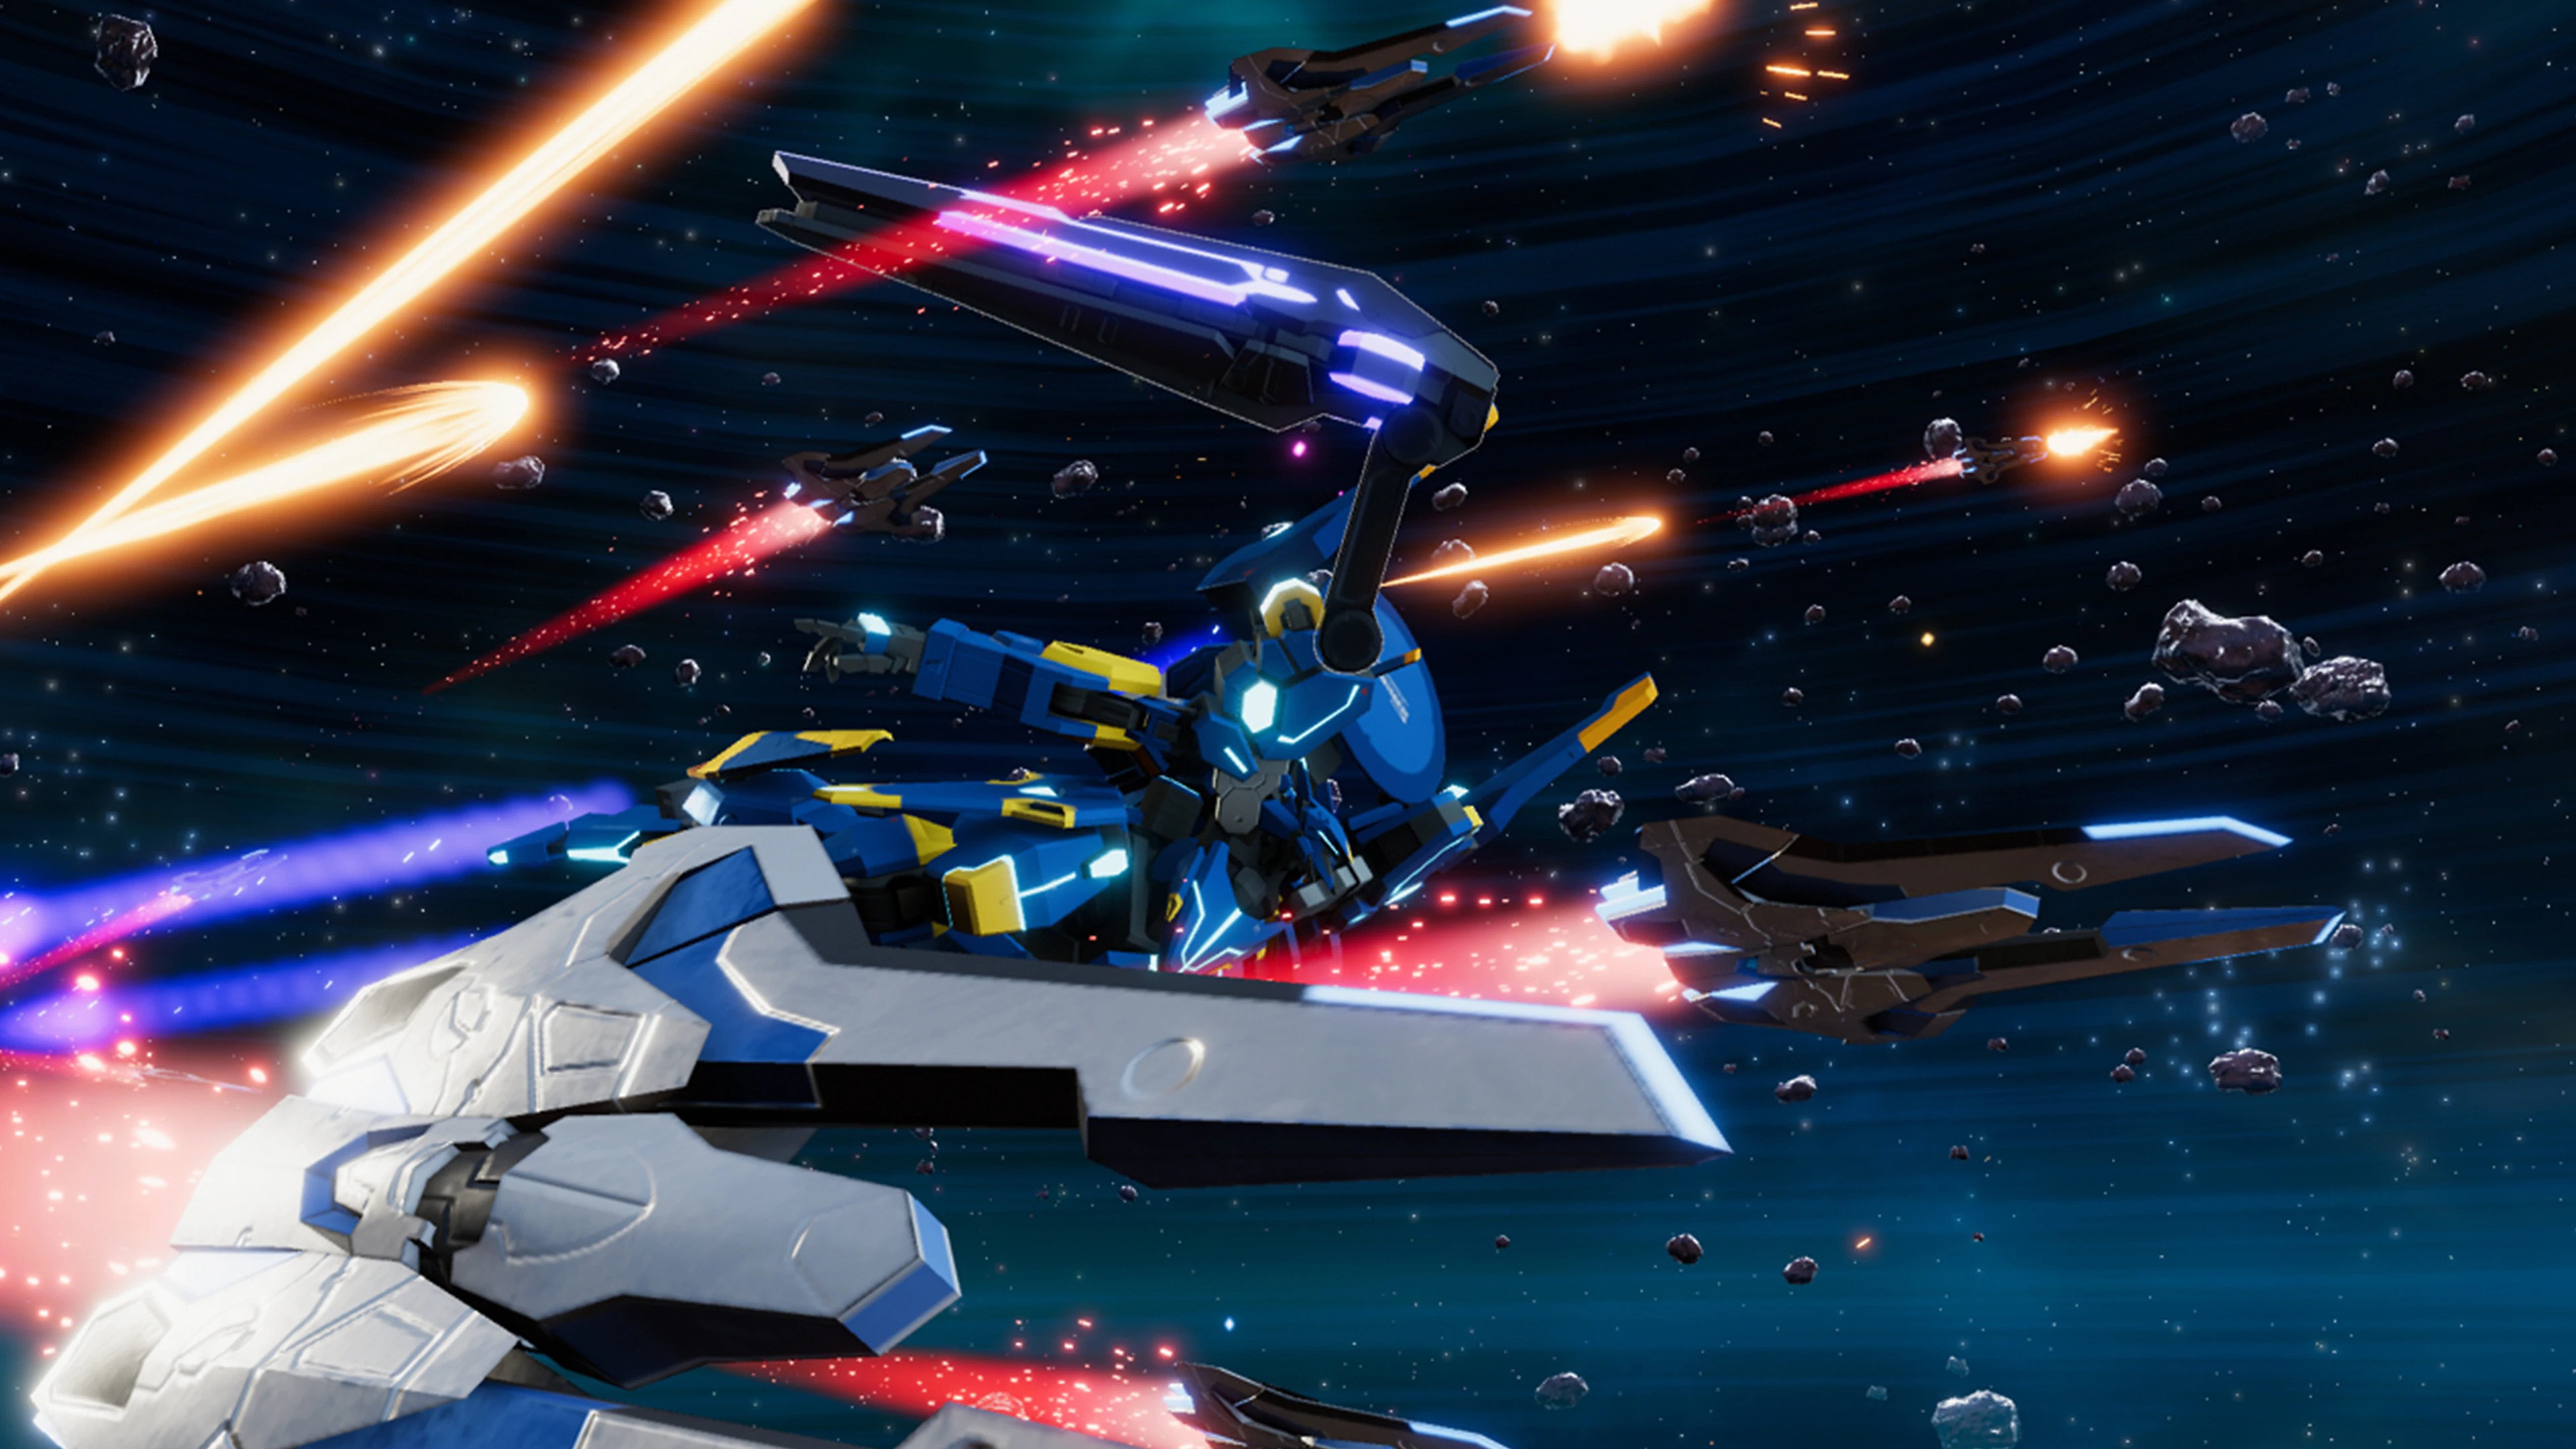 Capture d'écran de Relayer montrant un gigantesque méca parcourant l'espace aux côtés de plusieurs vaisseaux spatiaux